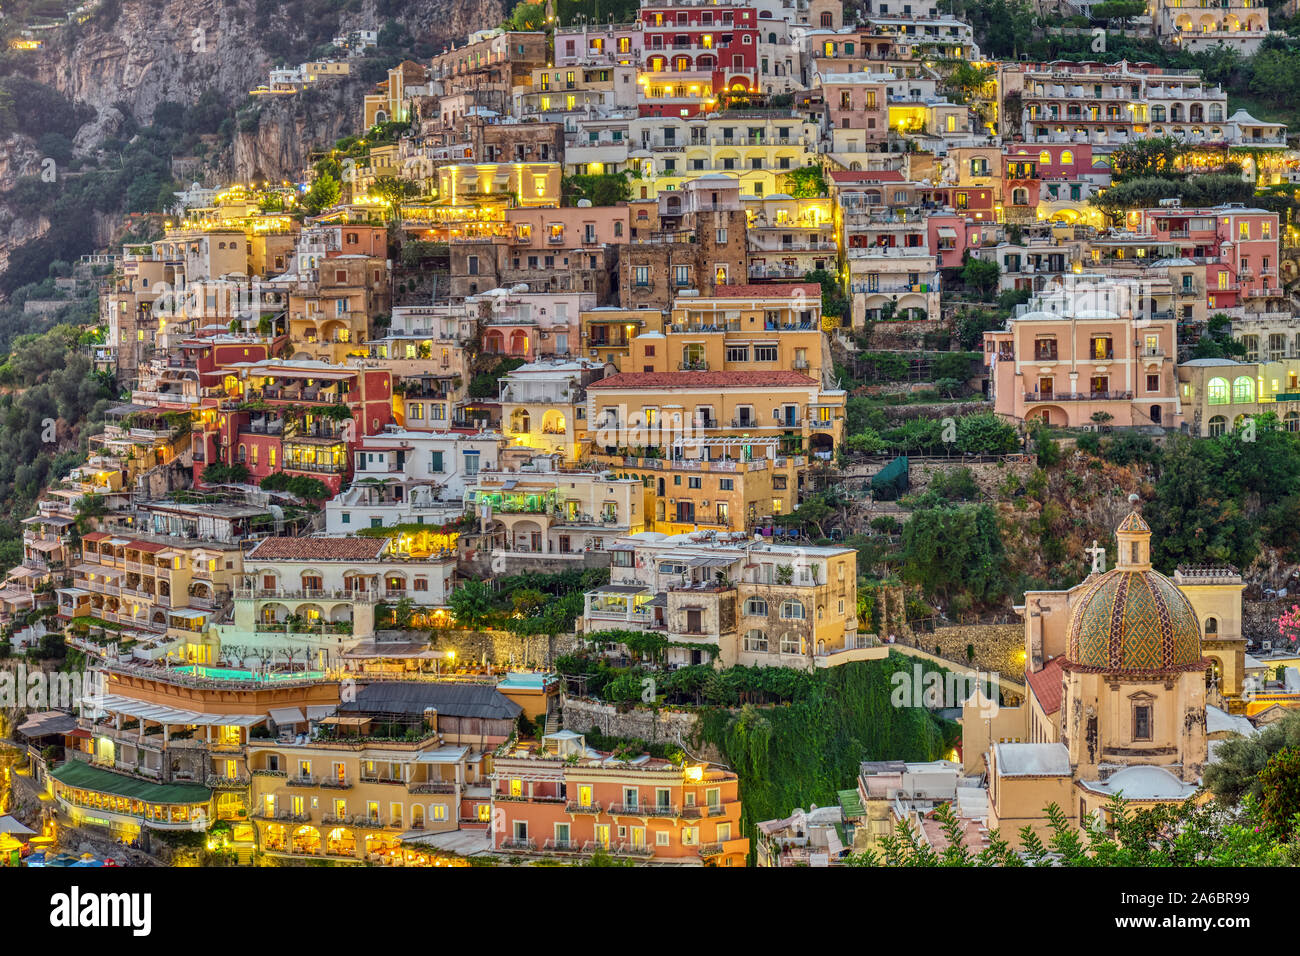 Las casas de Positano en Italia al atardecer Foto de stock